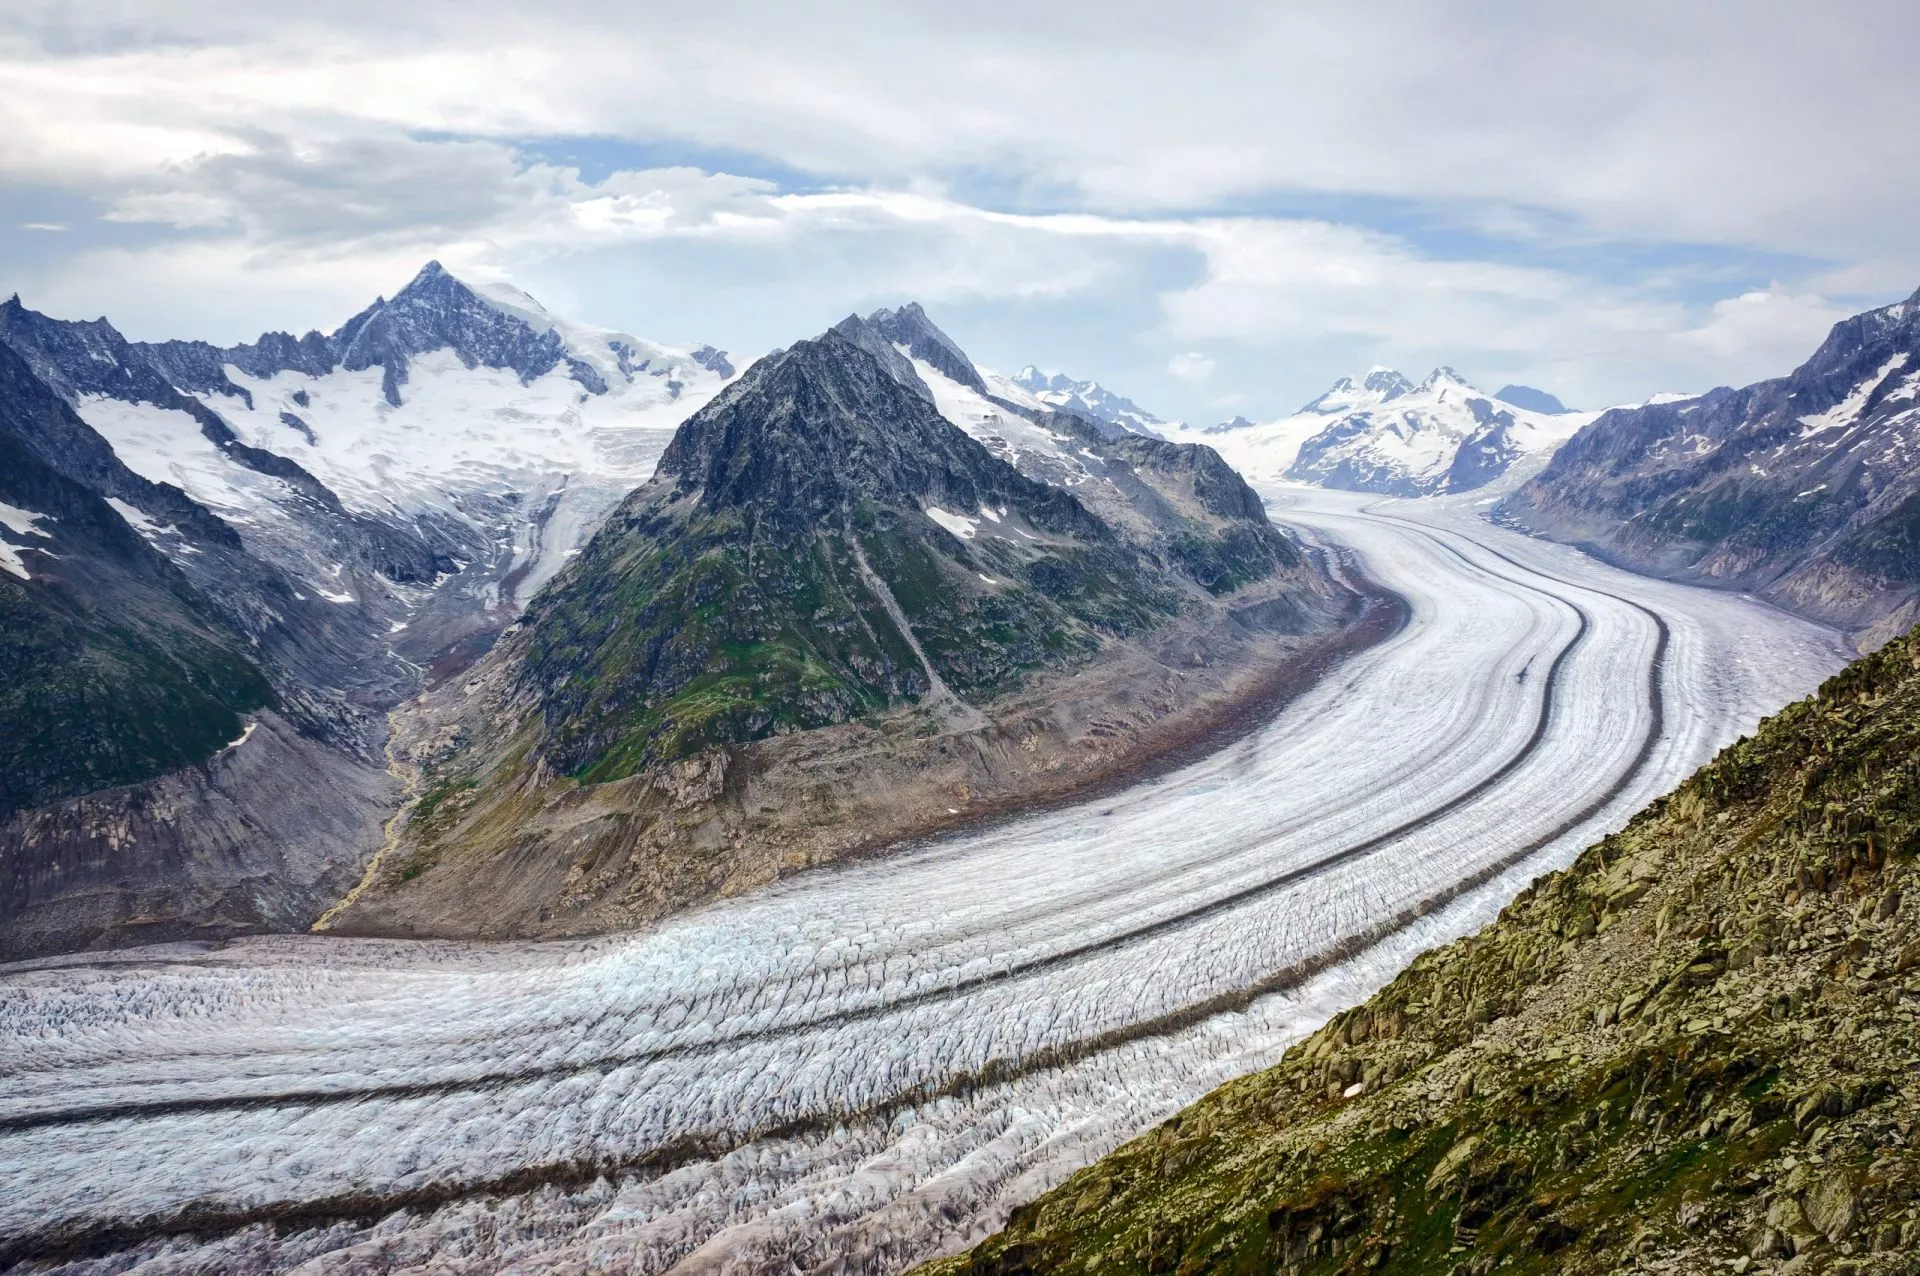 Euroopan suurin jäätikkö on Aletschin jäätikkö.